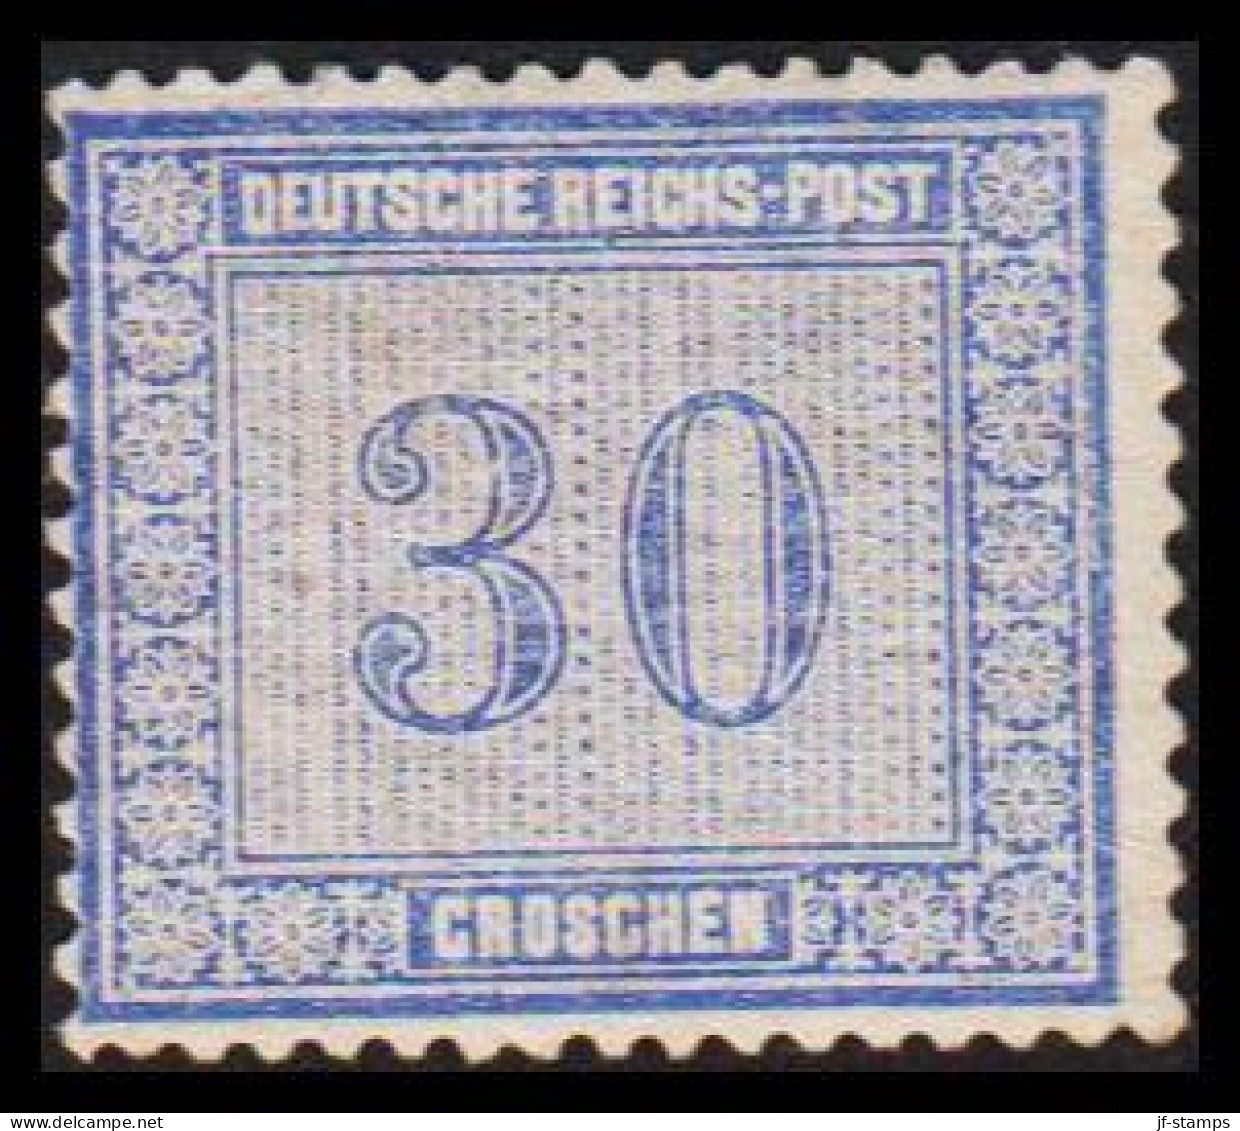 1872. DEUTSCHE REICHS-POST. 30 GROSCHEN. Nice Stamp Hinged, Thin Spot Reverse.  (Michel 13) - JF534008 - Unused Stamps